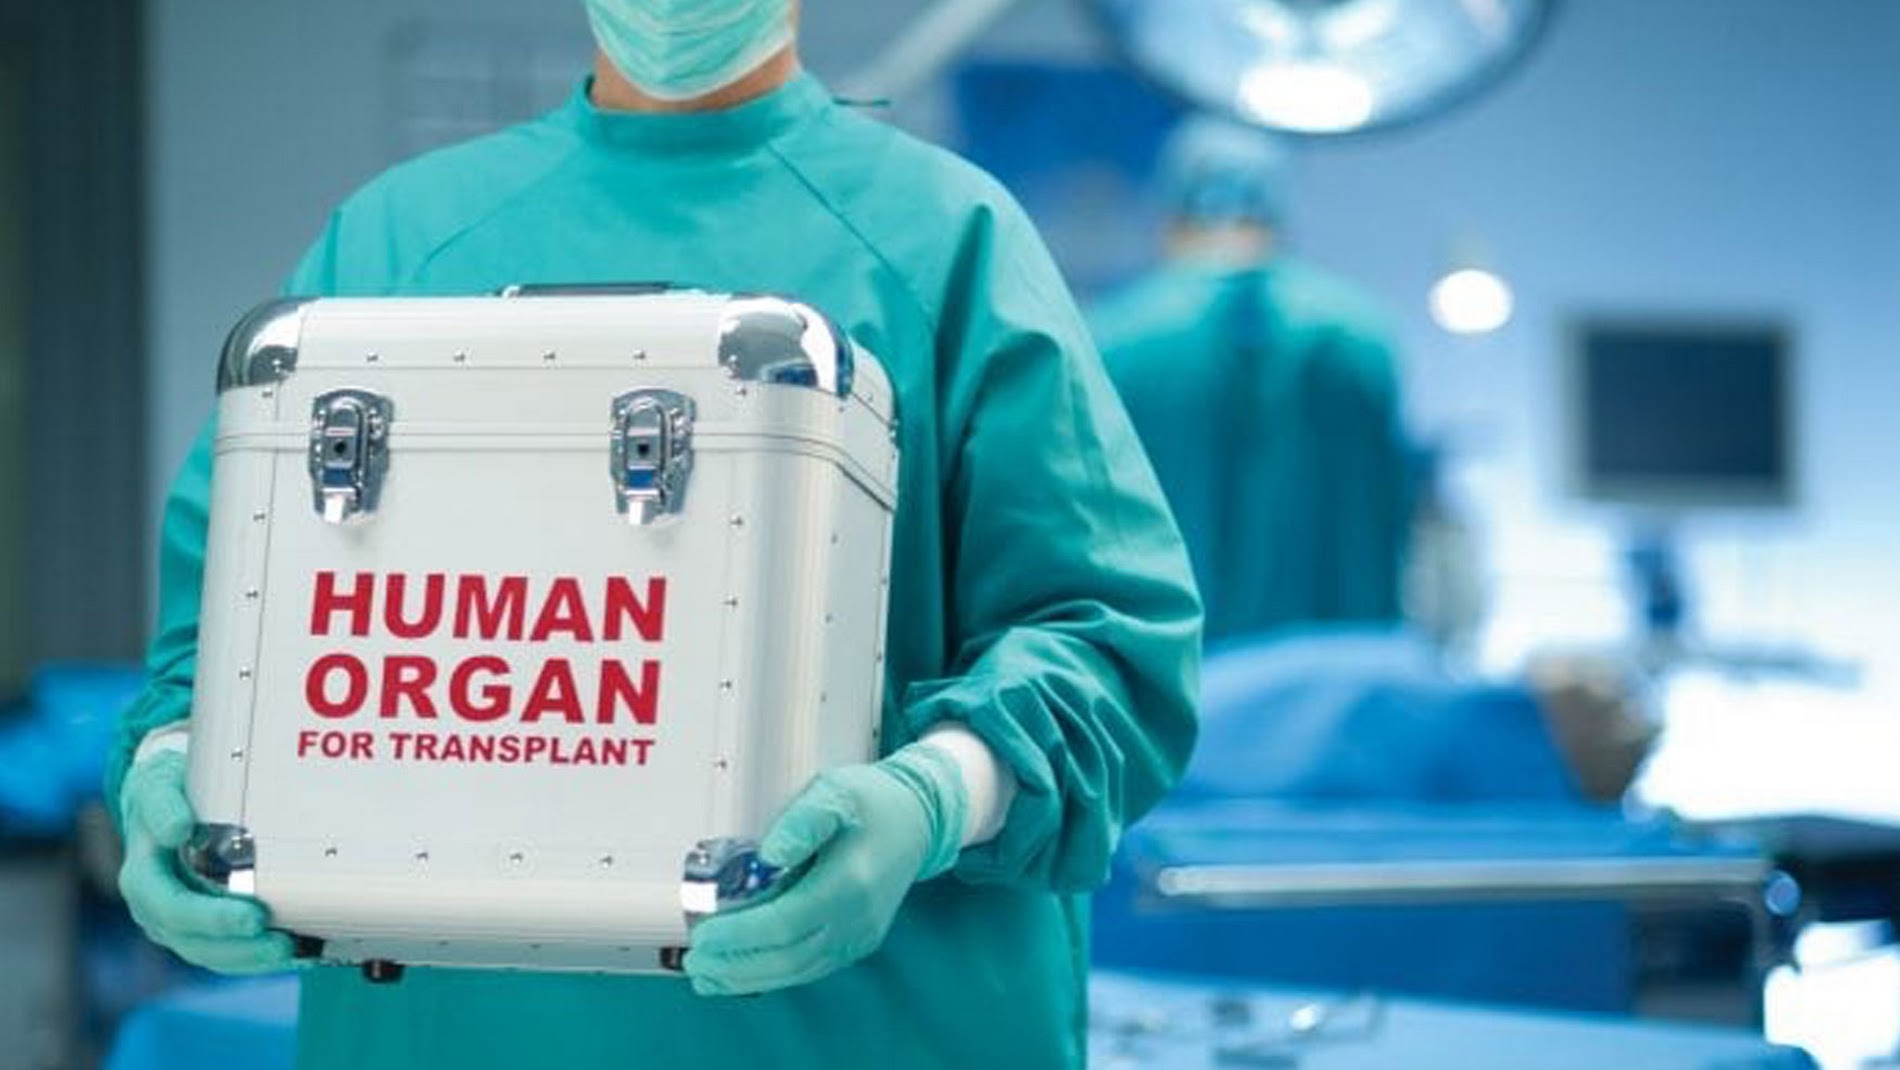 Imagen noticia 3.663 colombianos están a la espera de un trasplante de órgano